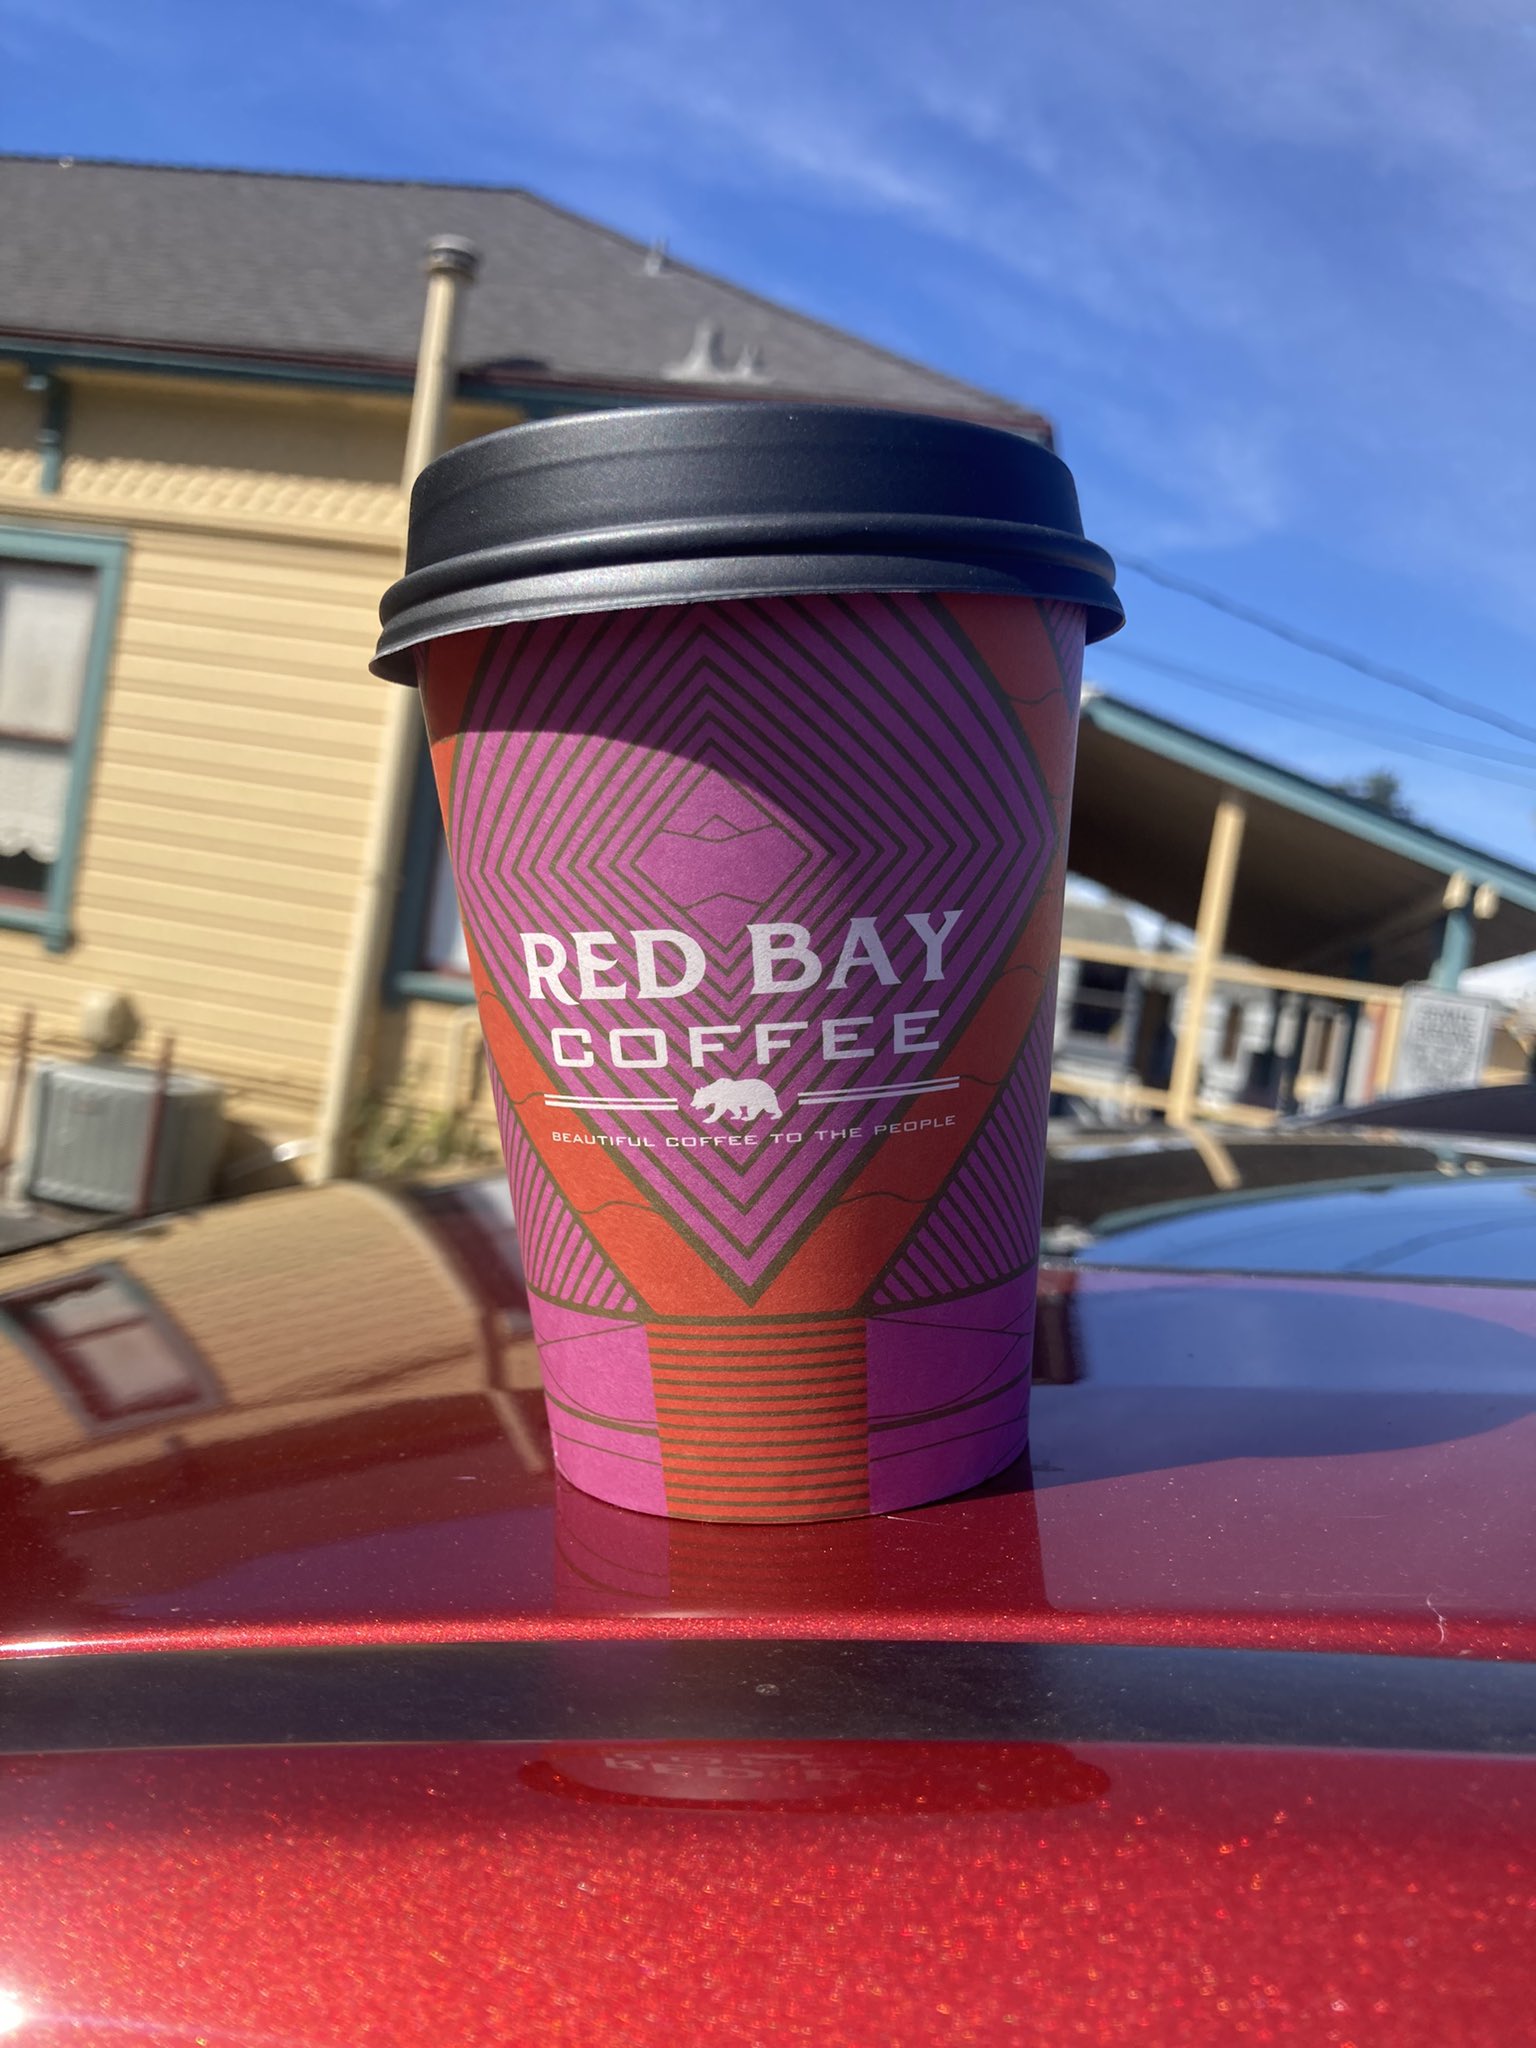 Red Bay Coffee Selected as One of Oprah's Favorite Things 2023